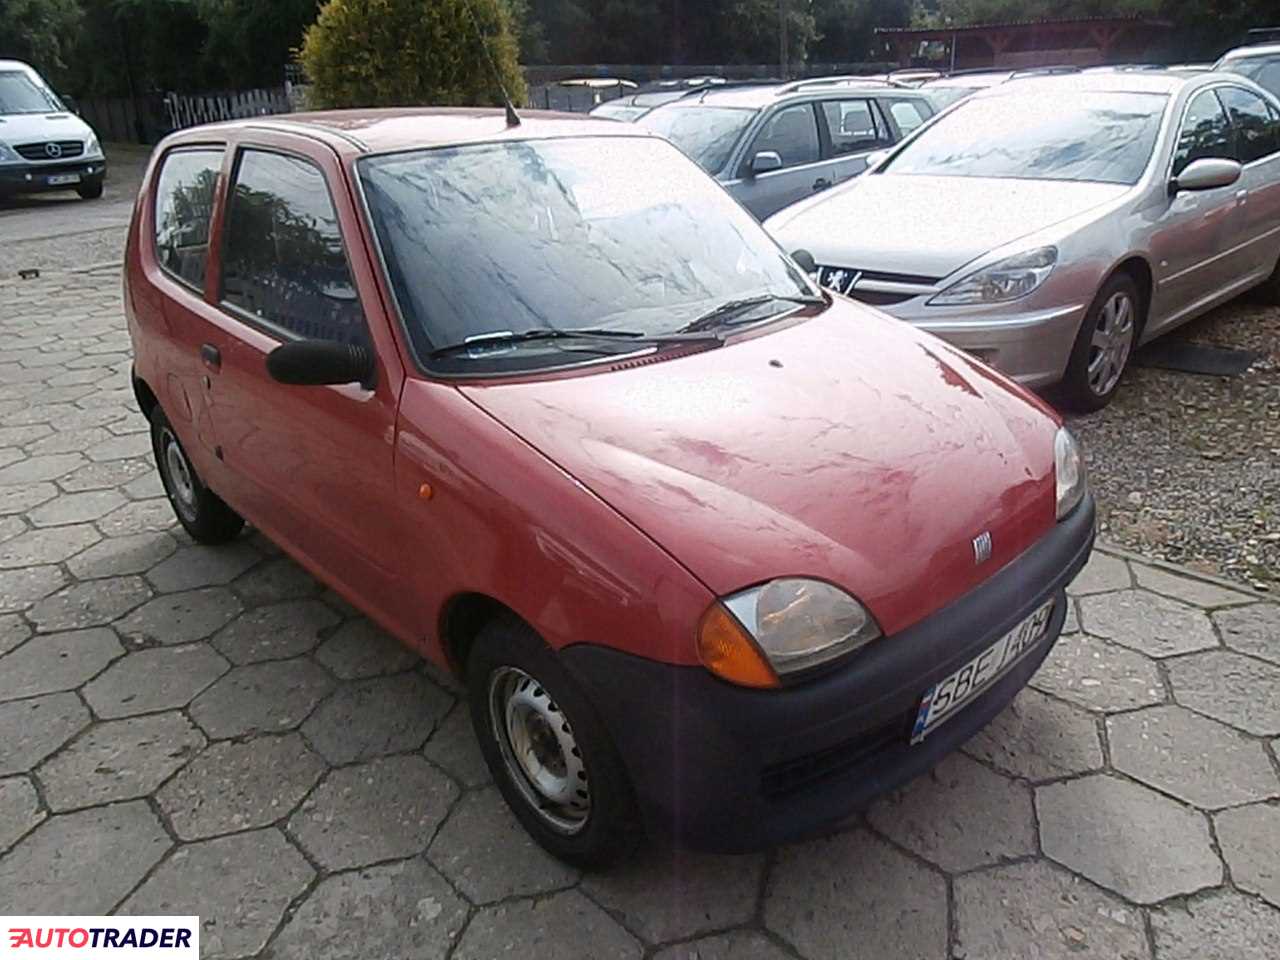 Fiat Seicento 2000 0.9 40 KM